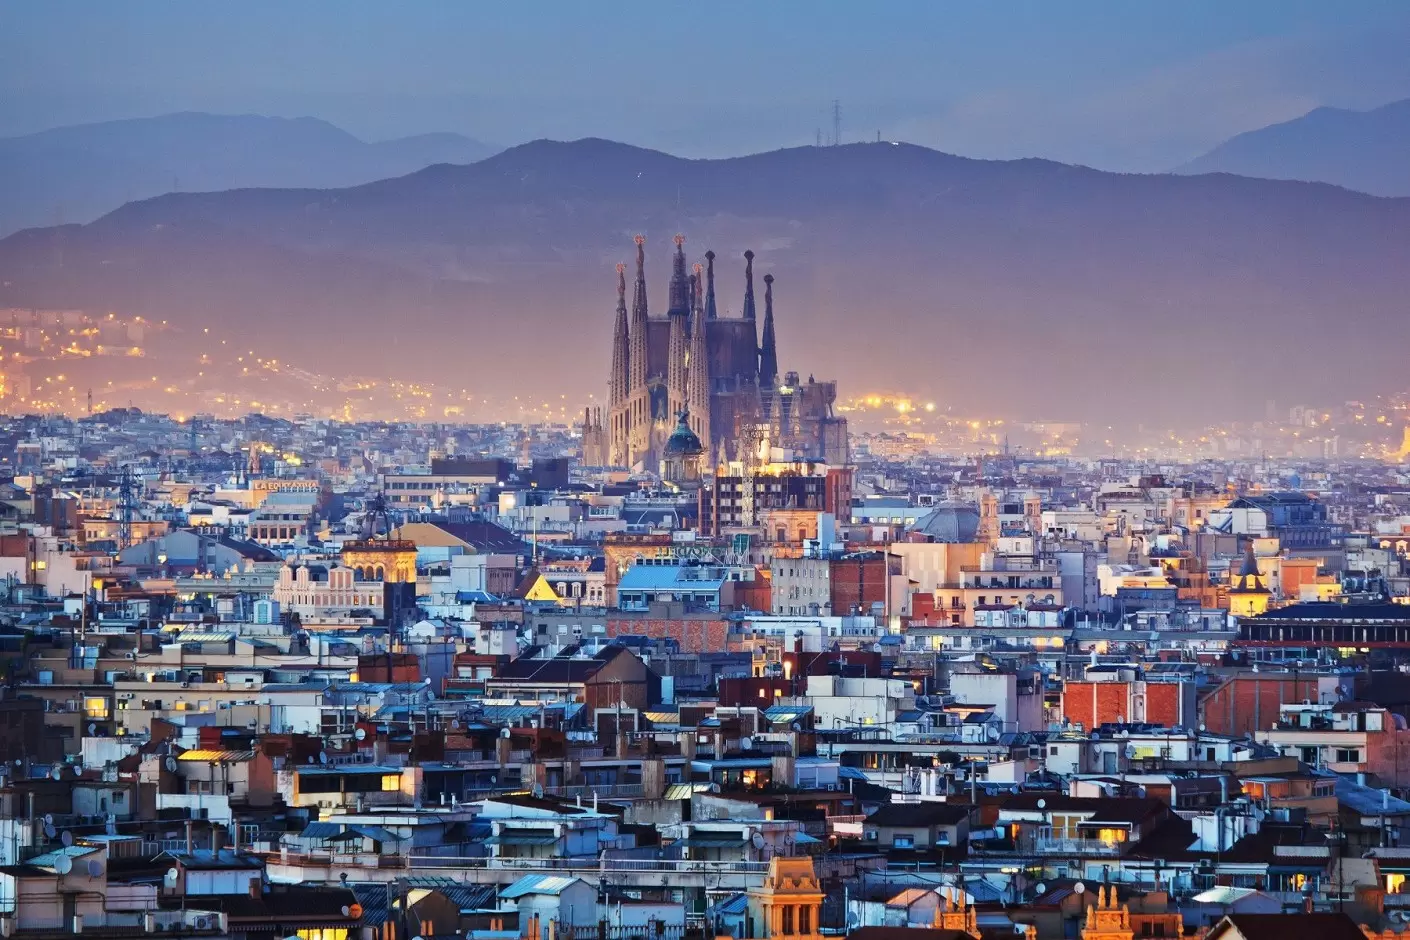 Ką verta žinoti prieš vykstant į Barseloną?